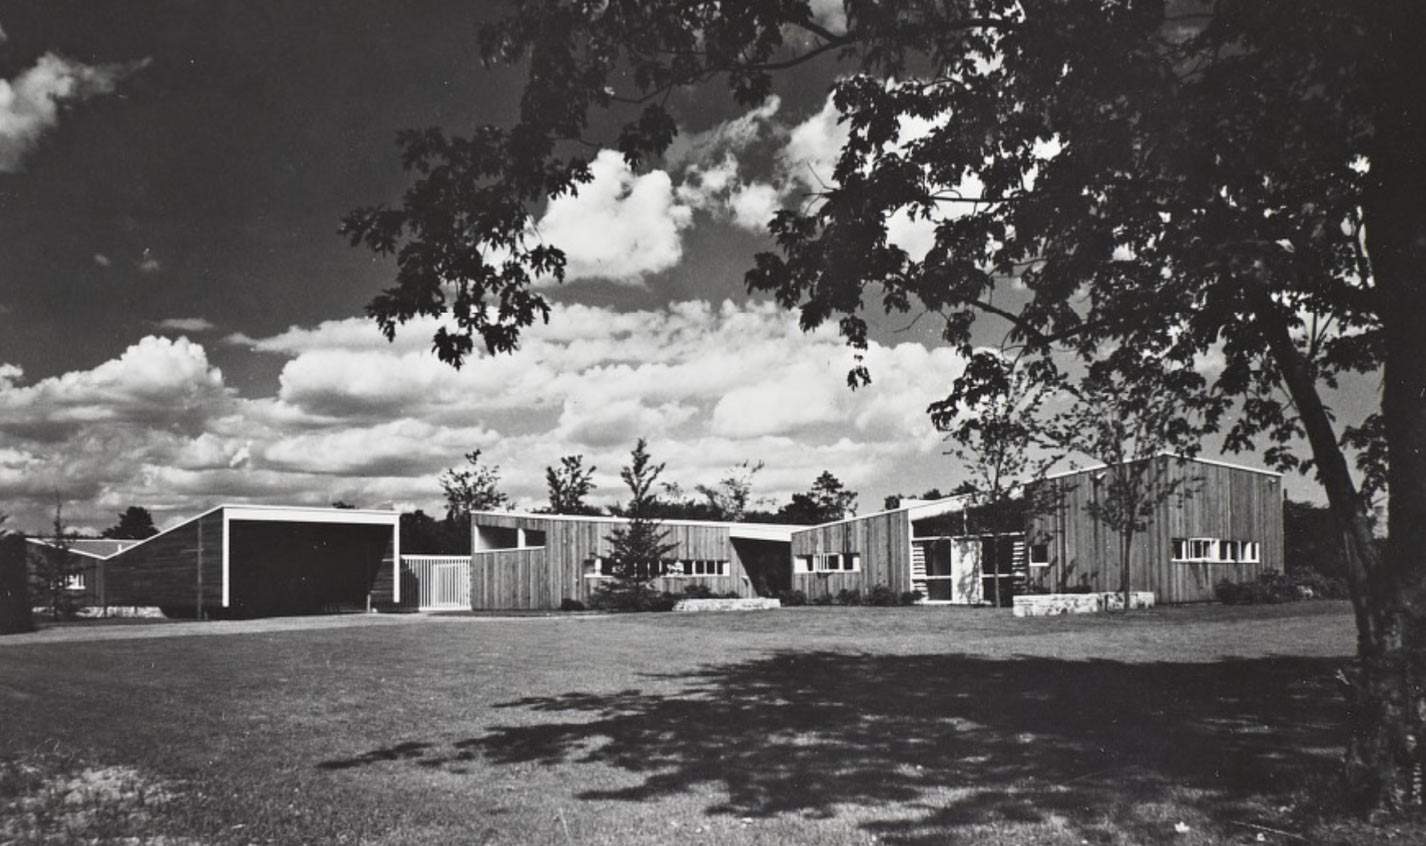 États-Unis, démolition de la maison de Marcel Breuer, grand architecte du Bauhaus. Une perte dévastatrice